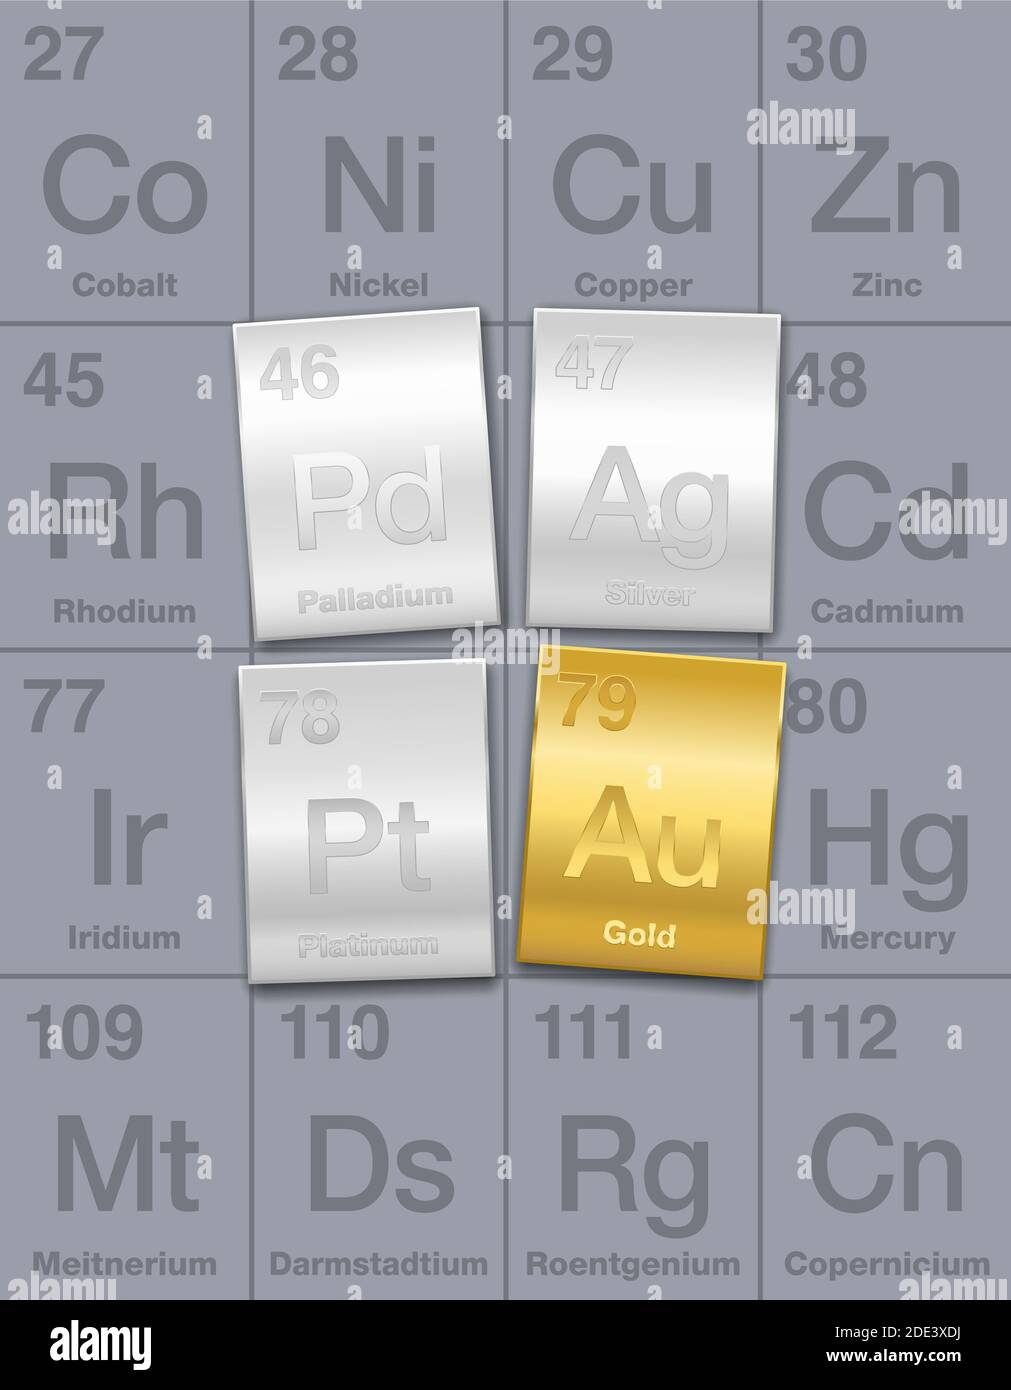 Metalli preziosi su tavola periodica. Barre di oro, argento, platino e palladio. Elementi chimici ad alto valore economico, considerati come un investimento. Foto Stock